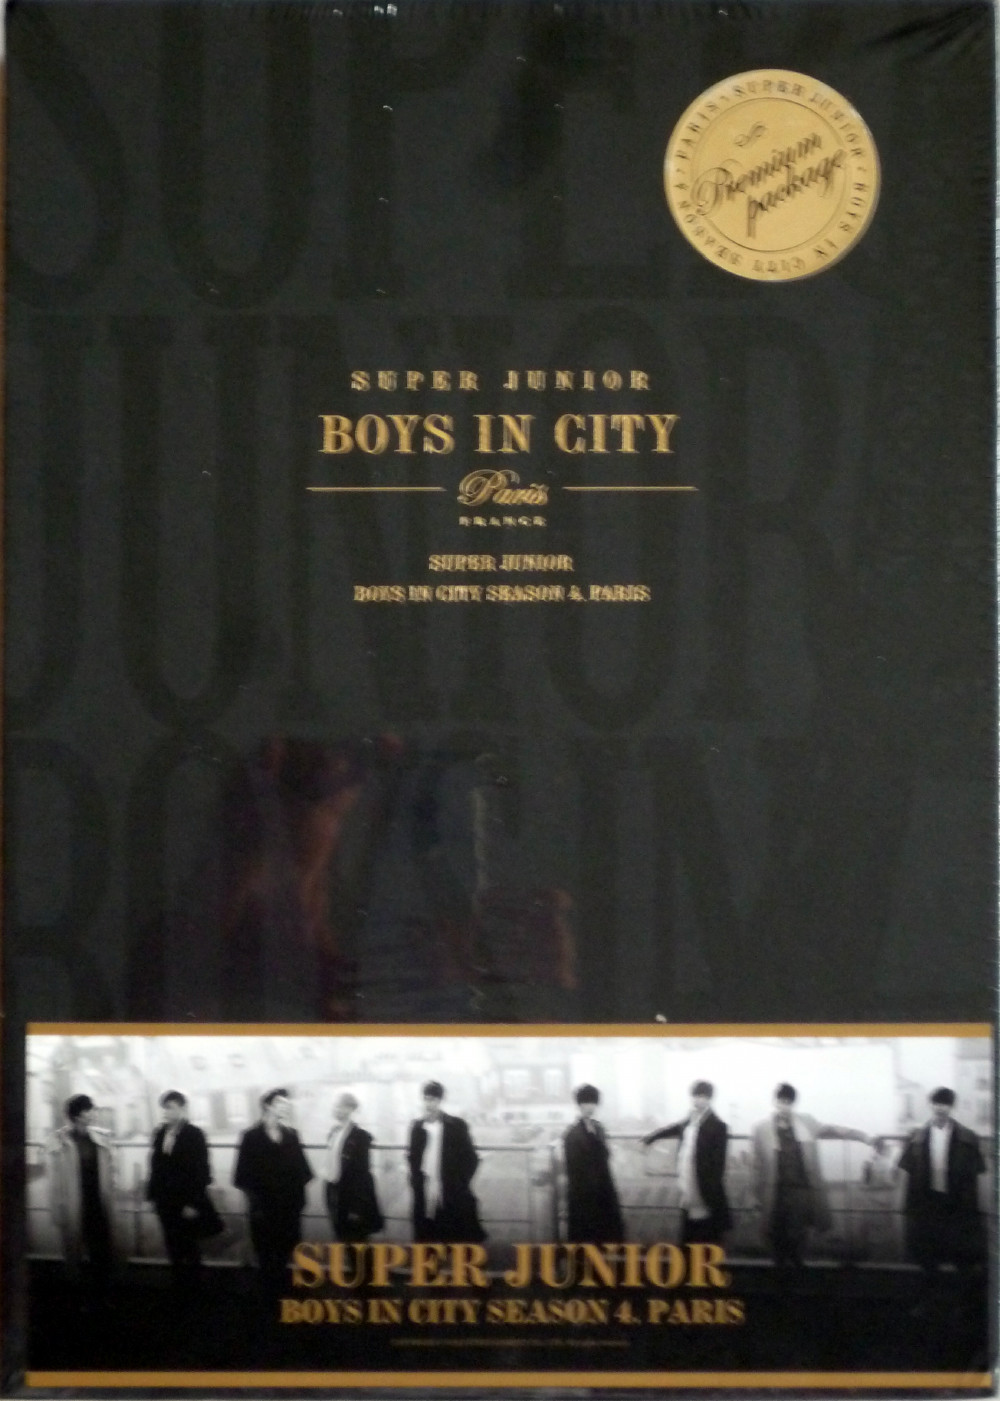 Super Junior- Super Junior Boys in City Season 4. Paris (Premium edition)